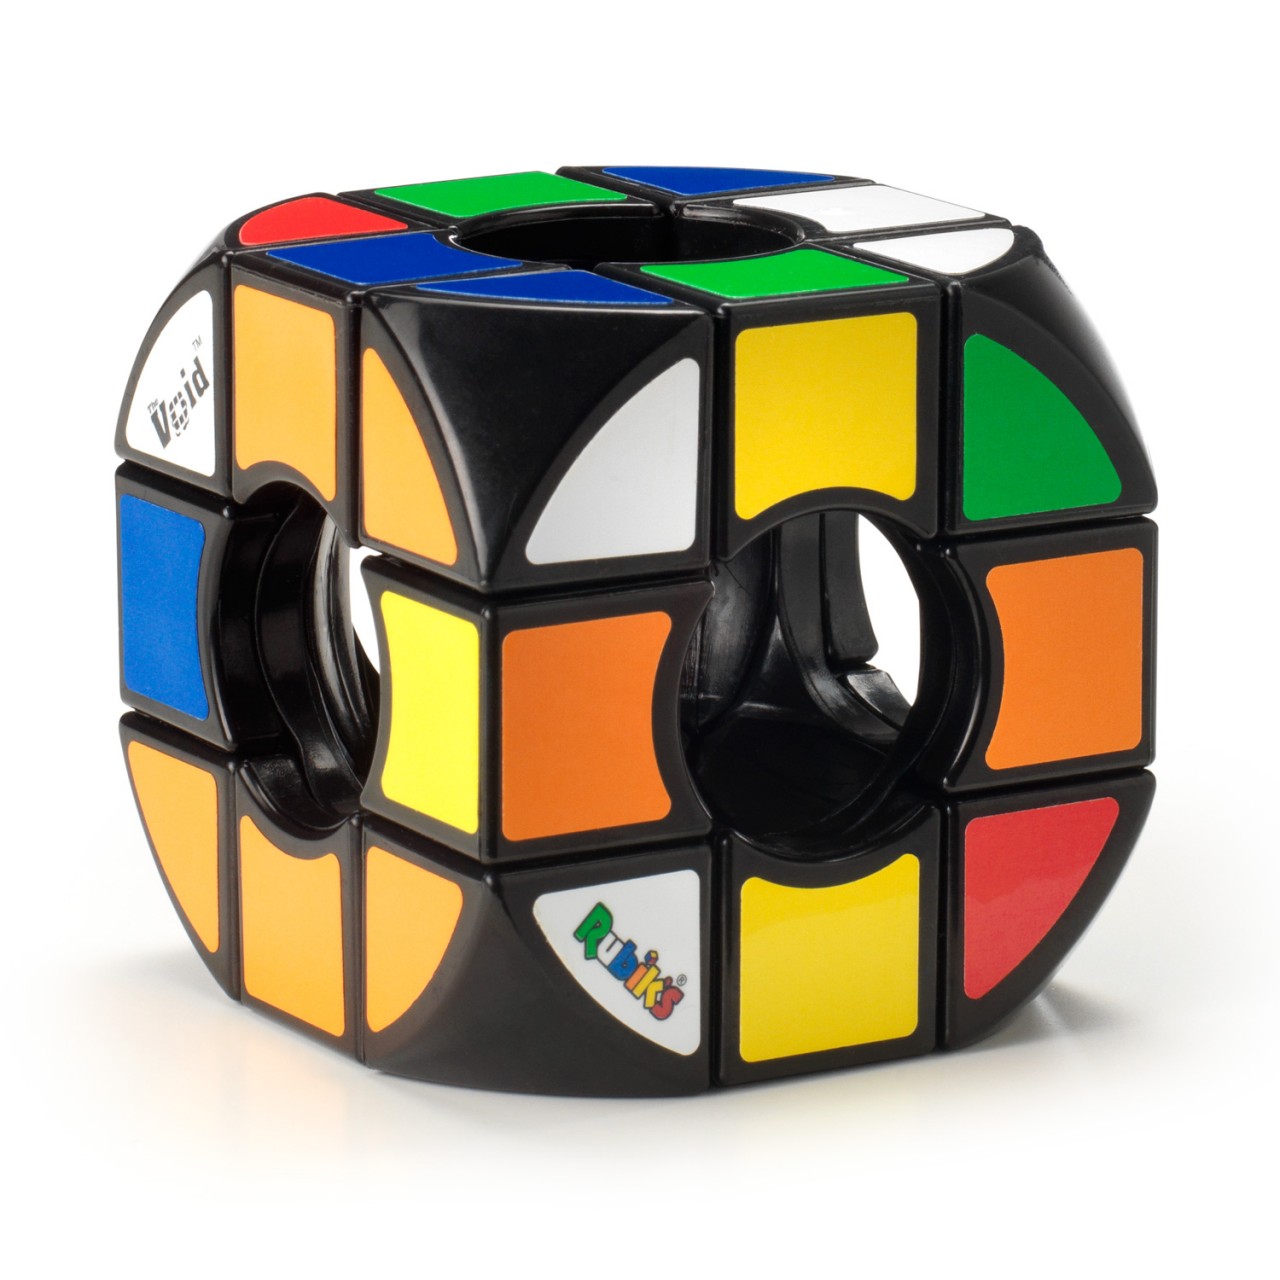 Рубик 3. Рубикс кубик Рубика 3х3. Кубик Рубика Rubiks 3x3. Головоломка Rubik's кубик Рубика 3х3. Головоломка "кубик 3х3".